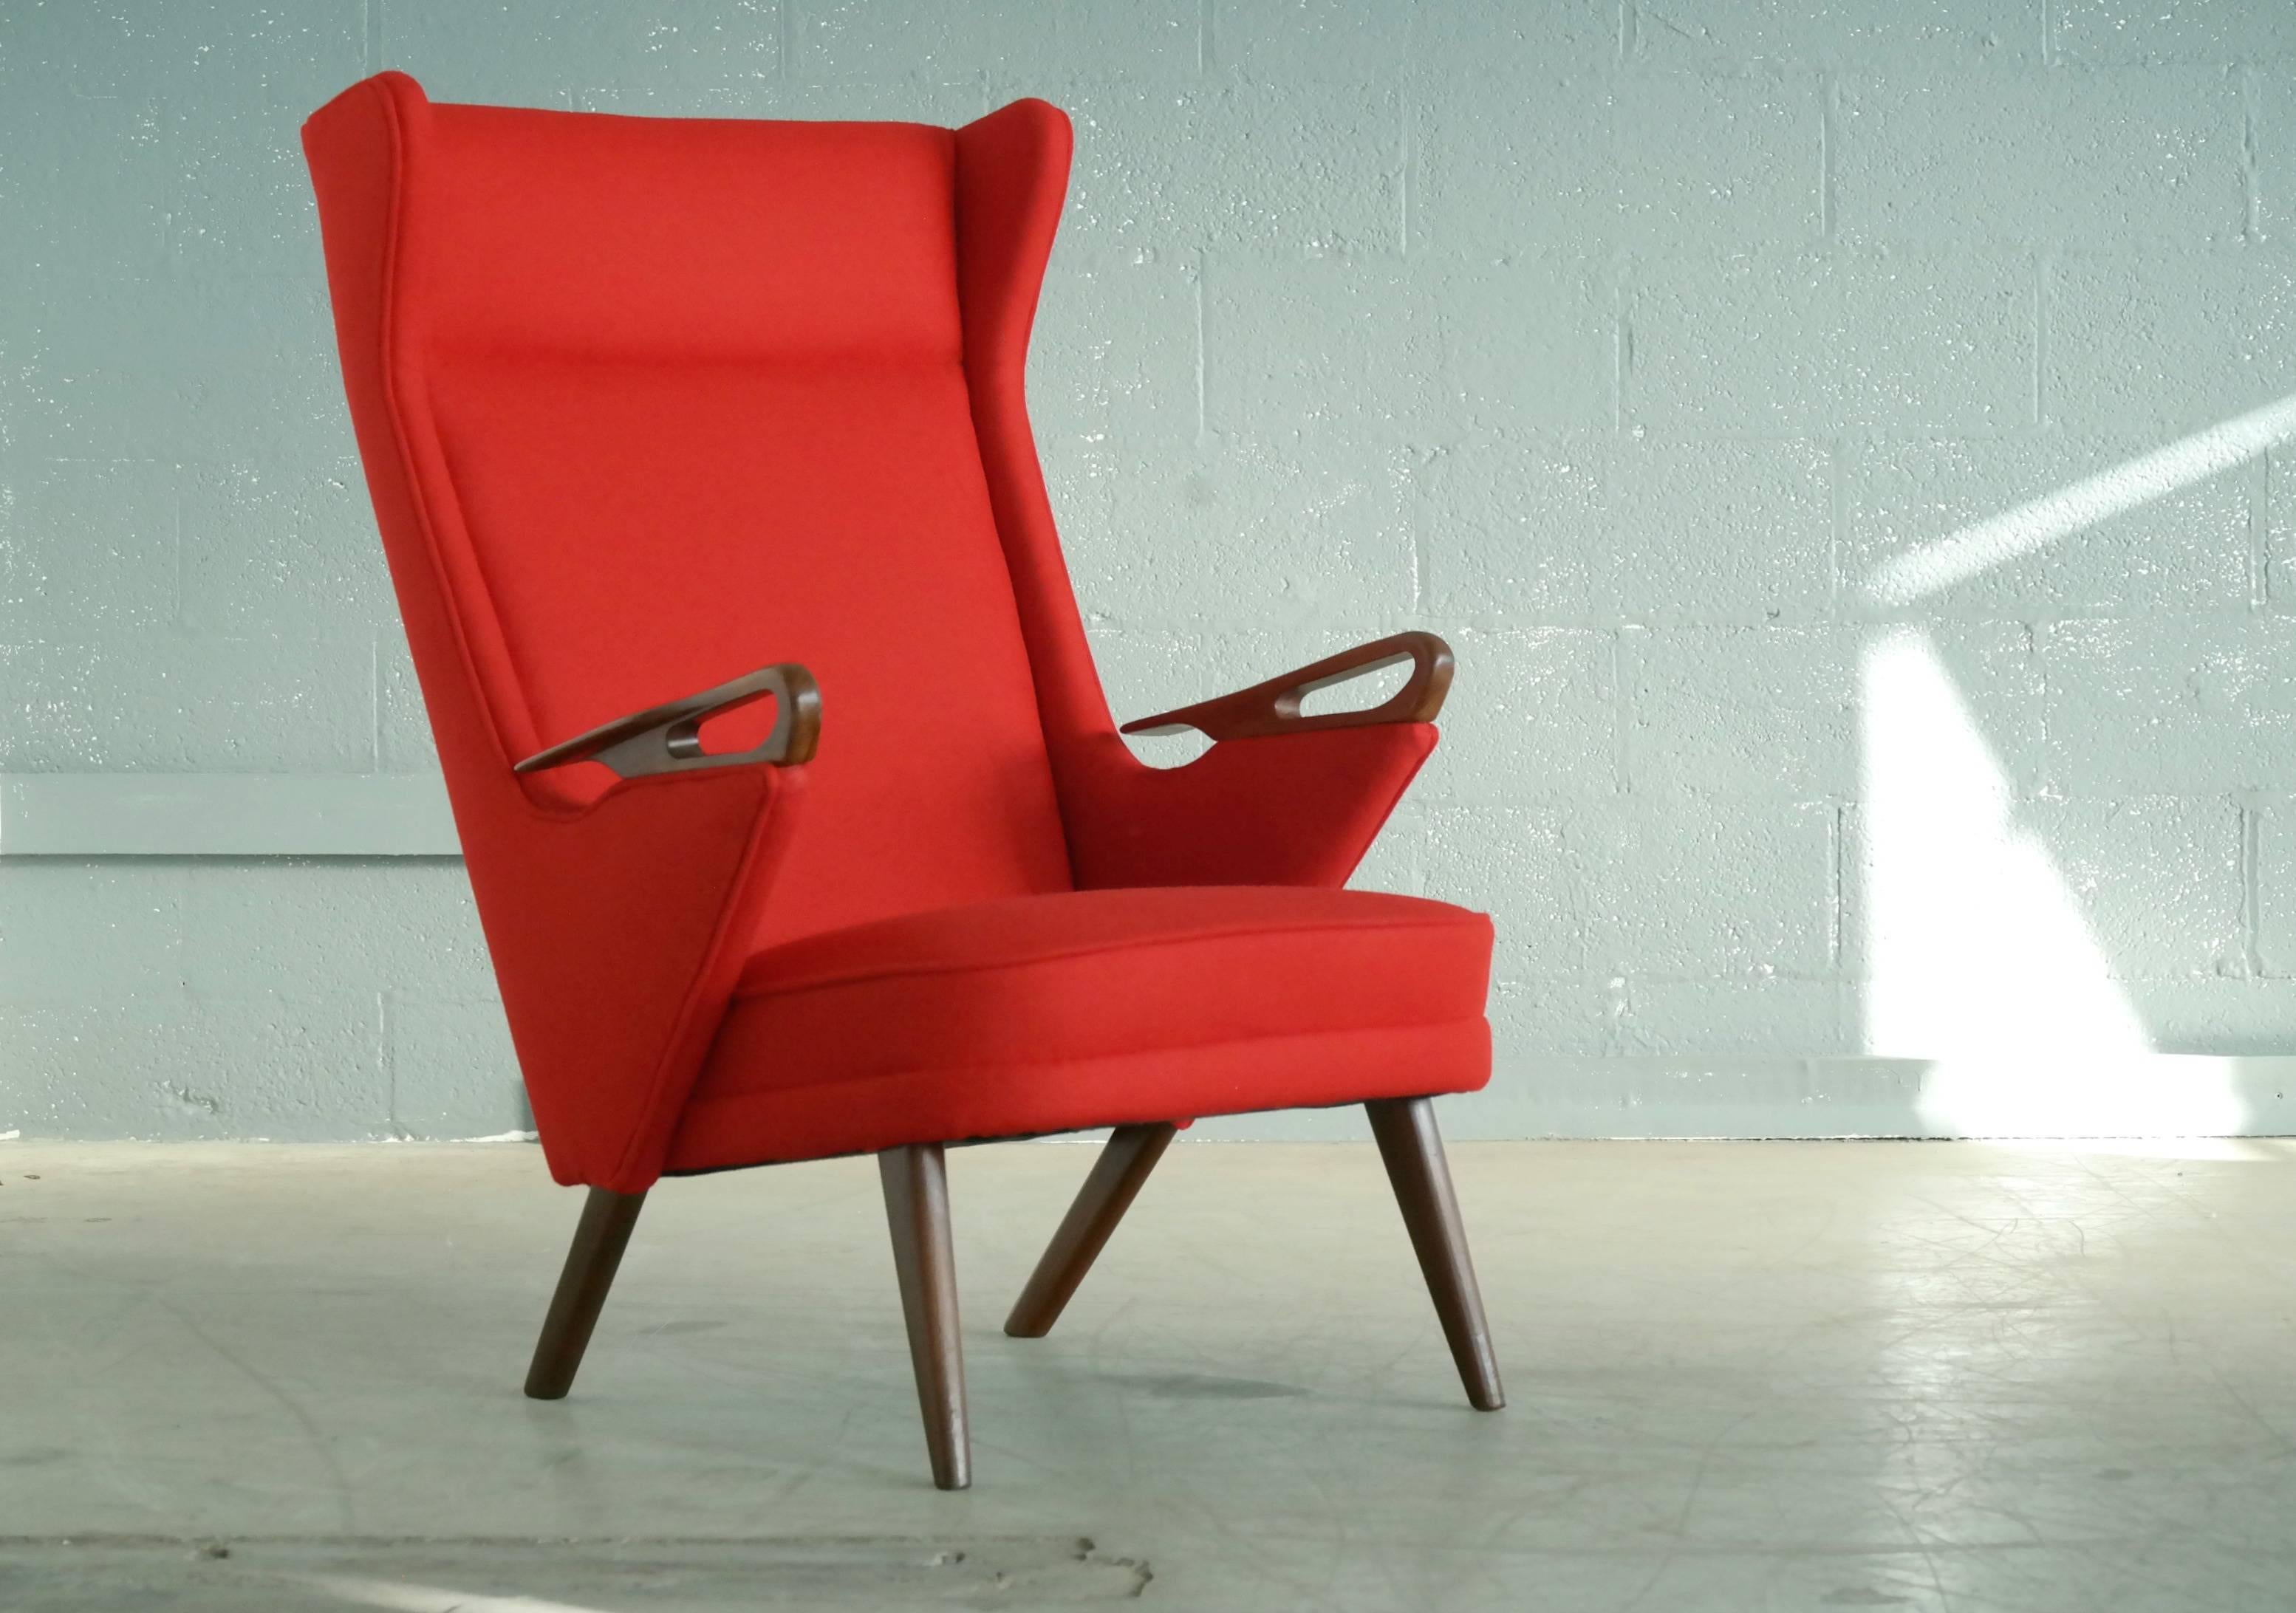 Extrêmement rare et tout simplement fantastique chaise de salon attribuée à Svend Skipper dans les années 1950, dans le style des chaises de Hans Wegner et des chaises de salon Papa Bear de Svend Skipper. Bien que cette chaise partage certaines des